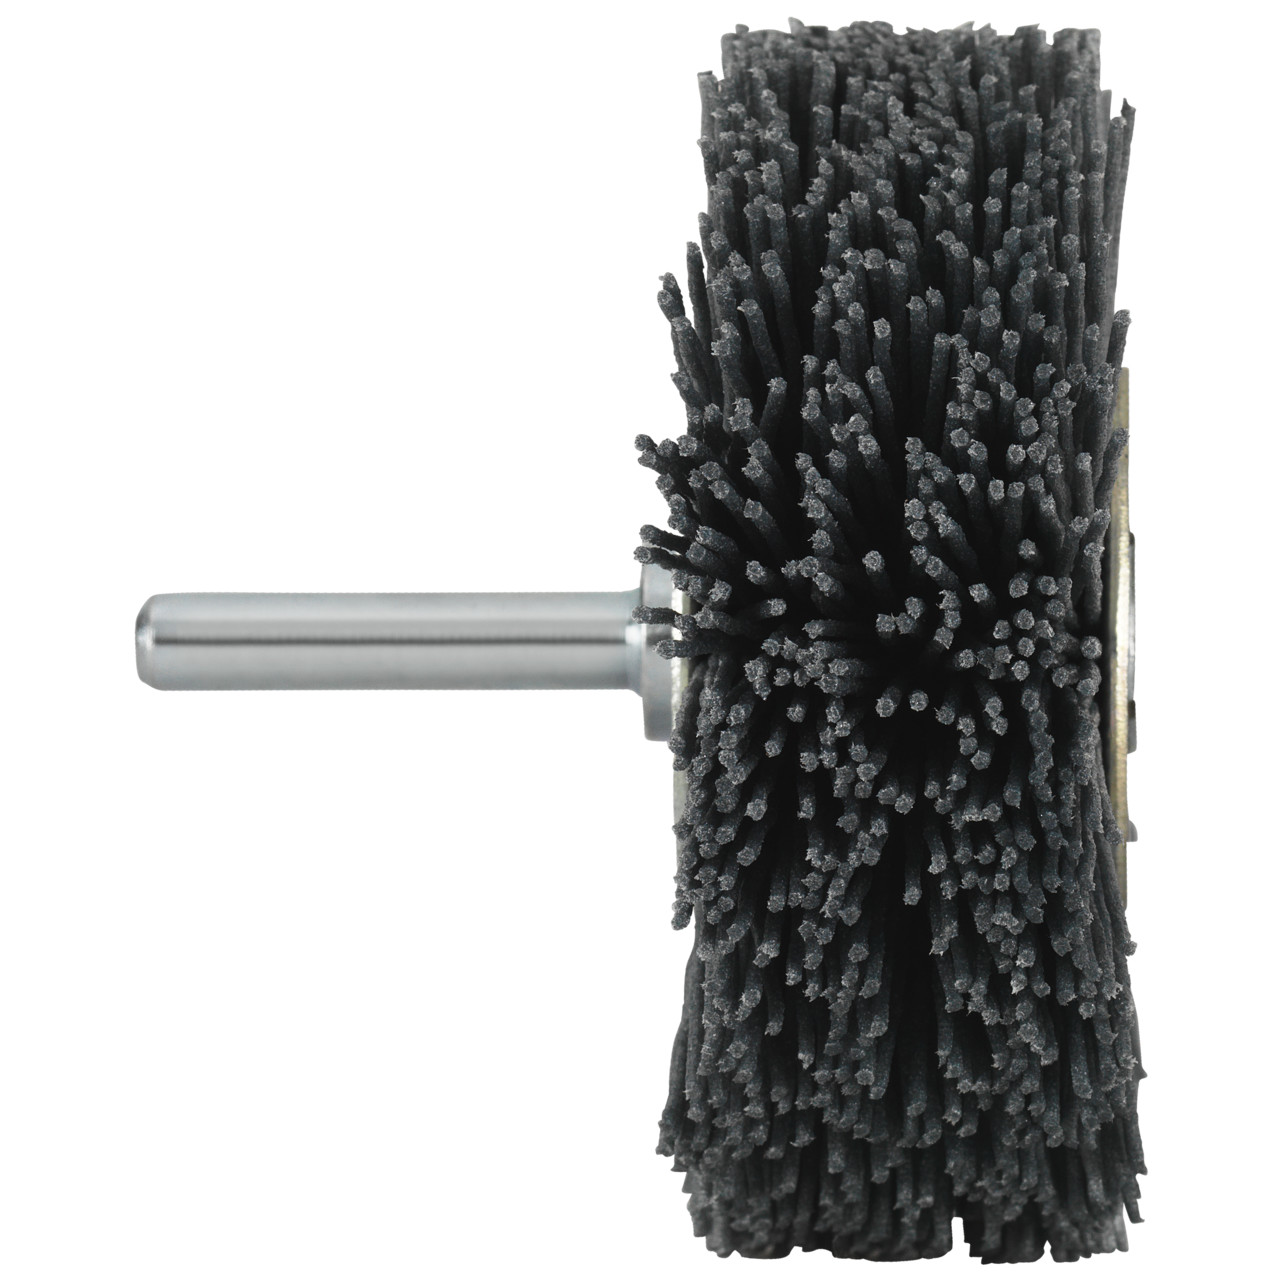 Tyrolit spazzole a gambo tondo DxLxH-GExI 50x20x12.5-6x30 Per uso universale, forma: 52RDK - (spazzole a gambo tondo), Art. 34043572